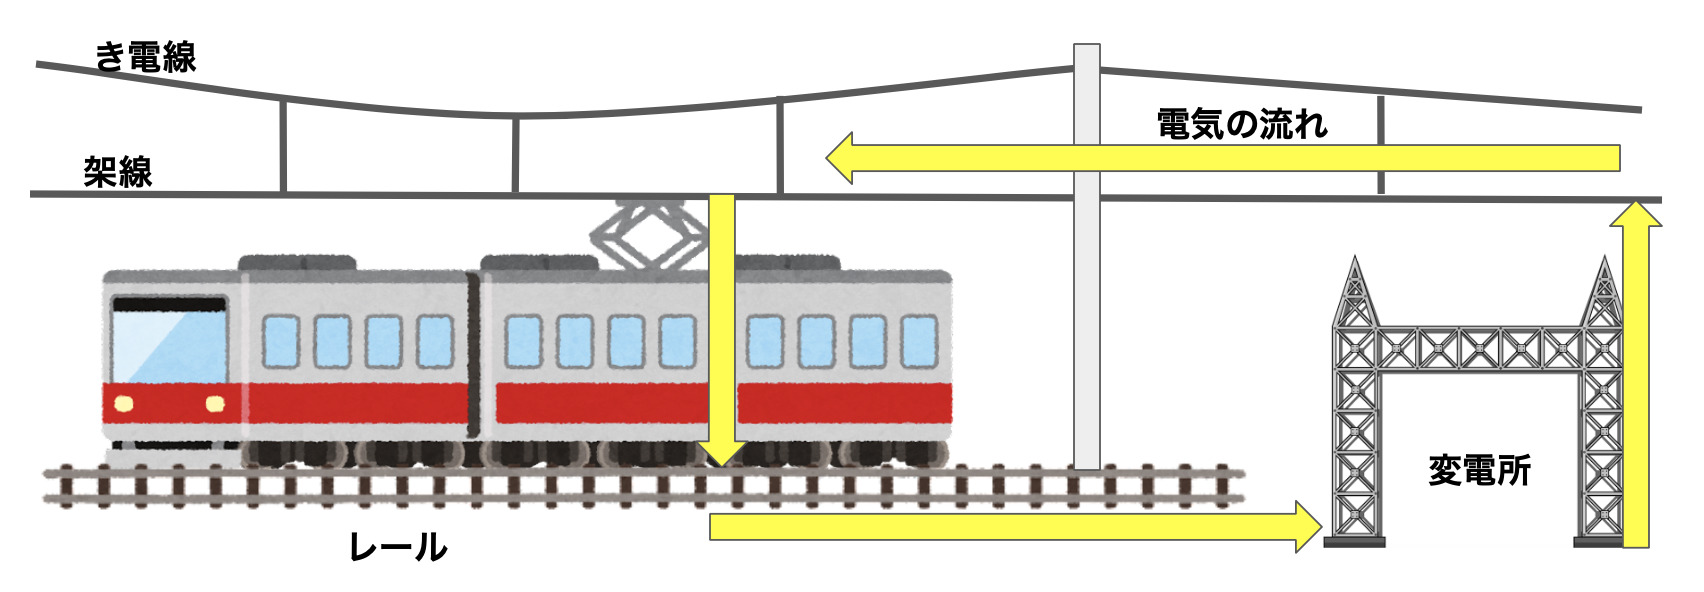 電車の電気の流れや架線の仕組み